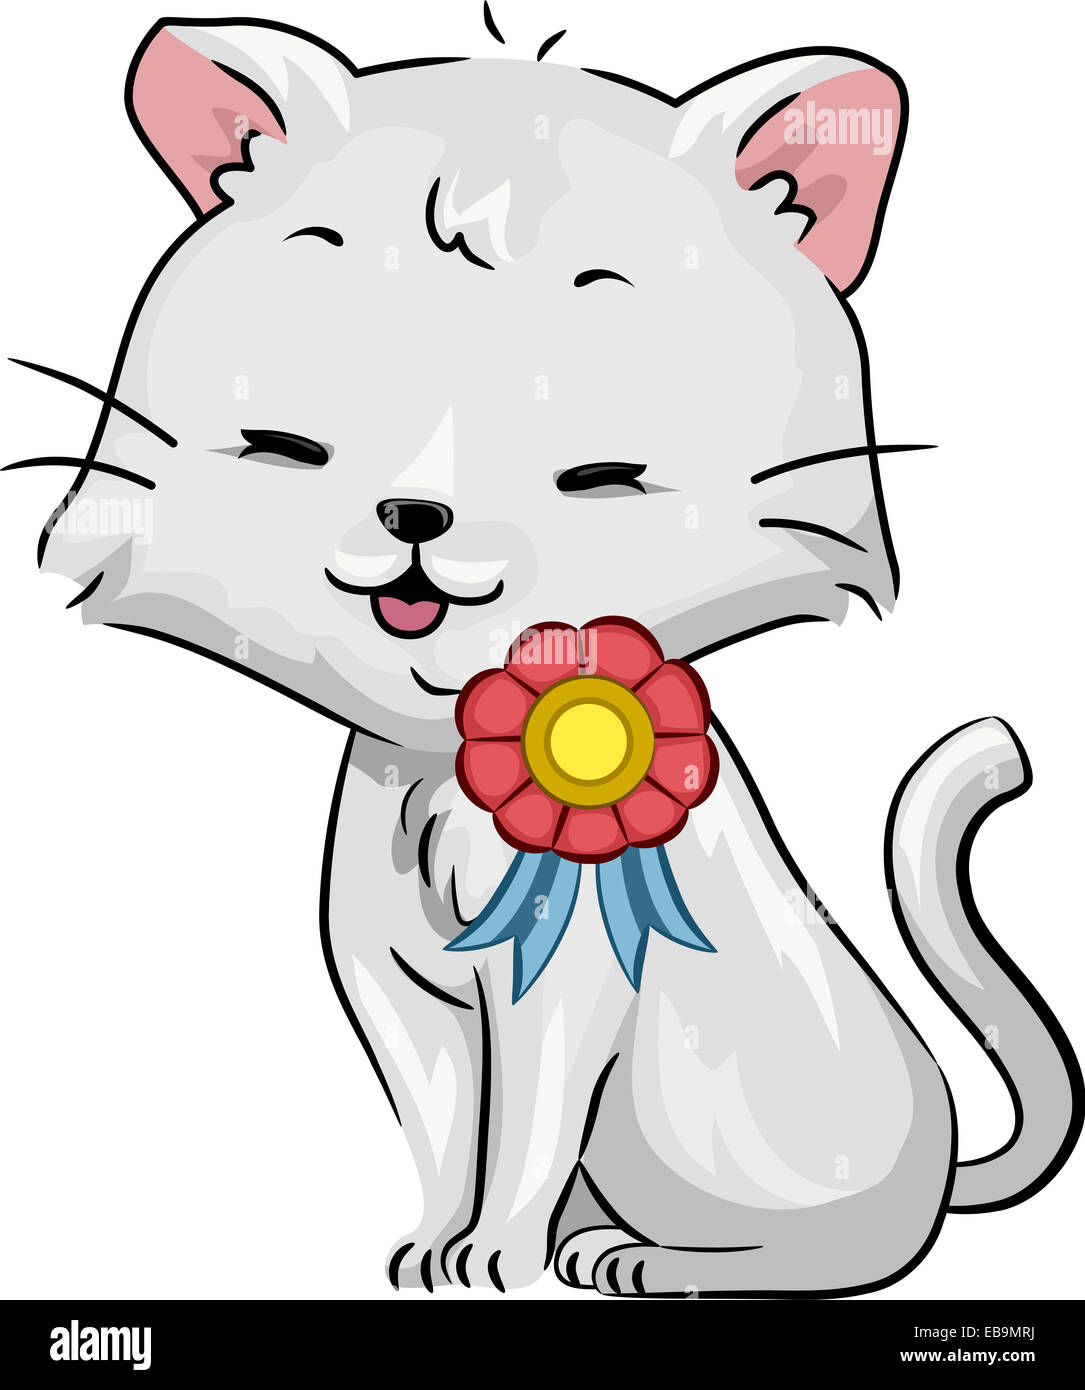 Illustration d'un chat heureux avec un ruban sur l'épaule Banque D'Images